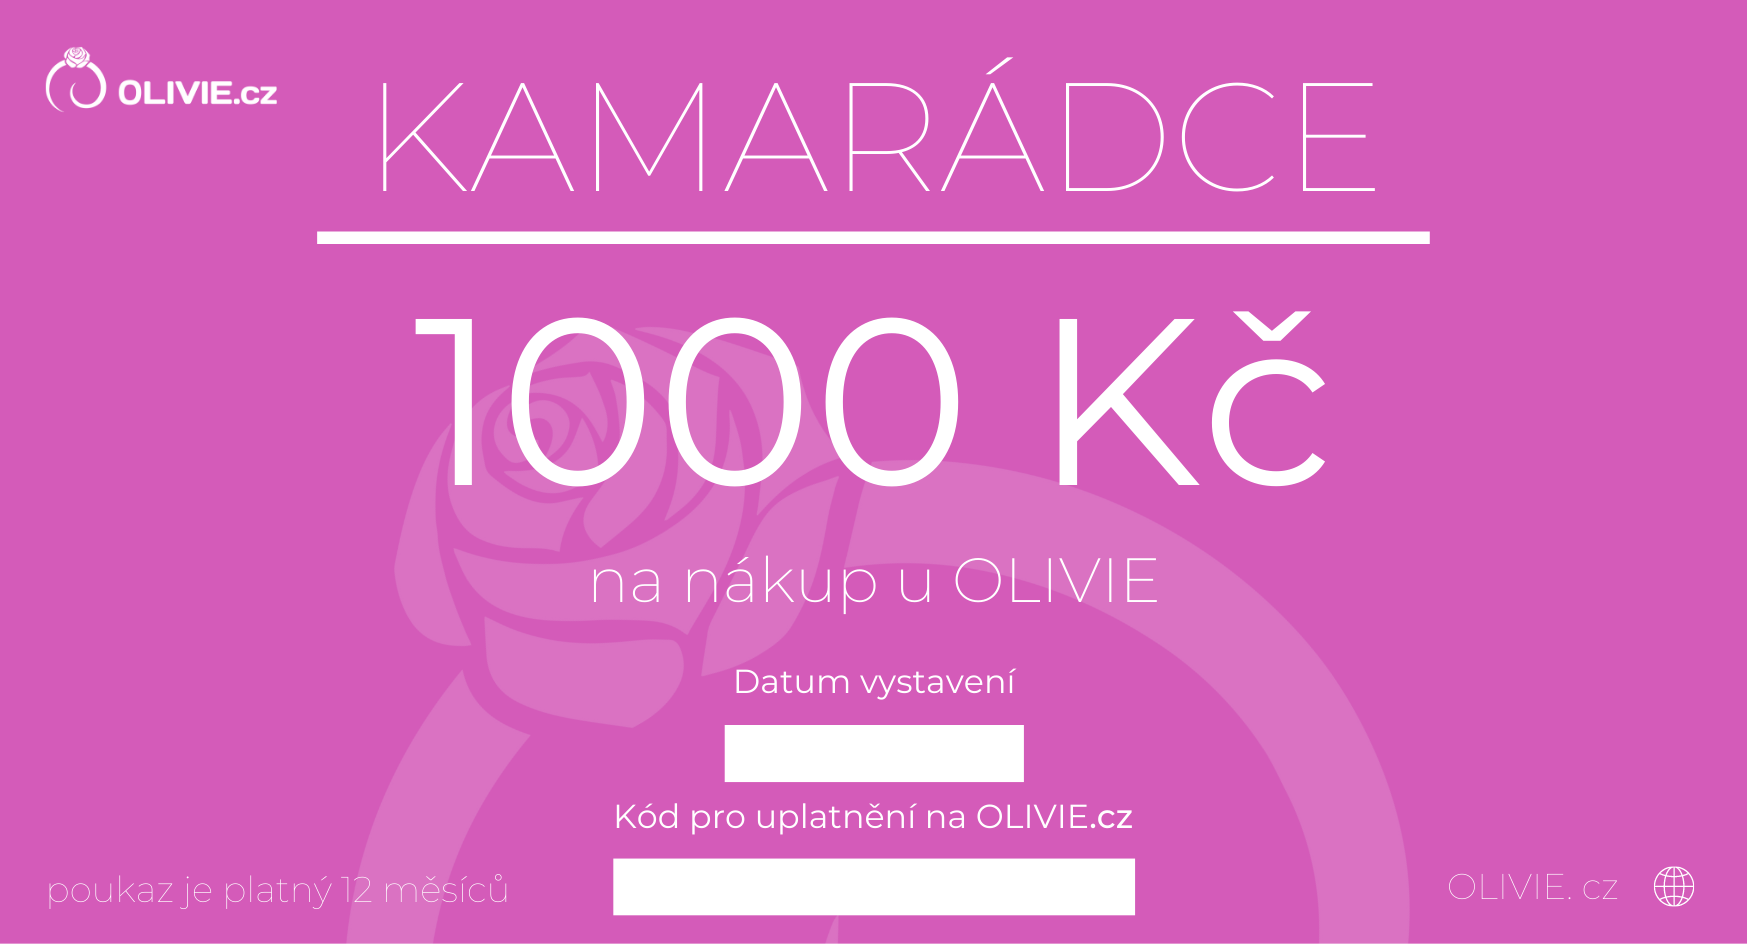 OLIVIE Elektronický dárkový poukaz KAMARÁDCE Hodnota: 1000 Kč